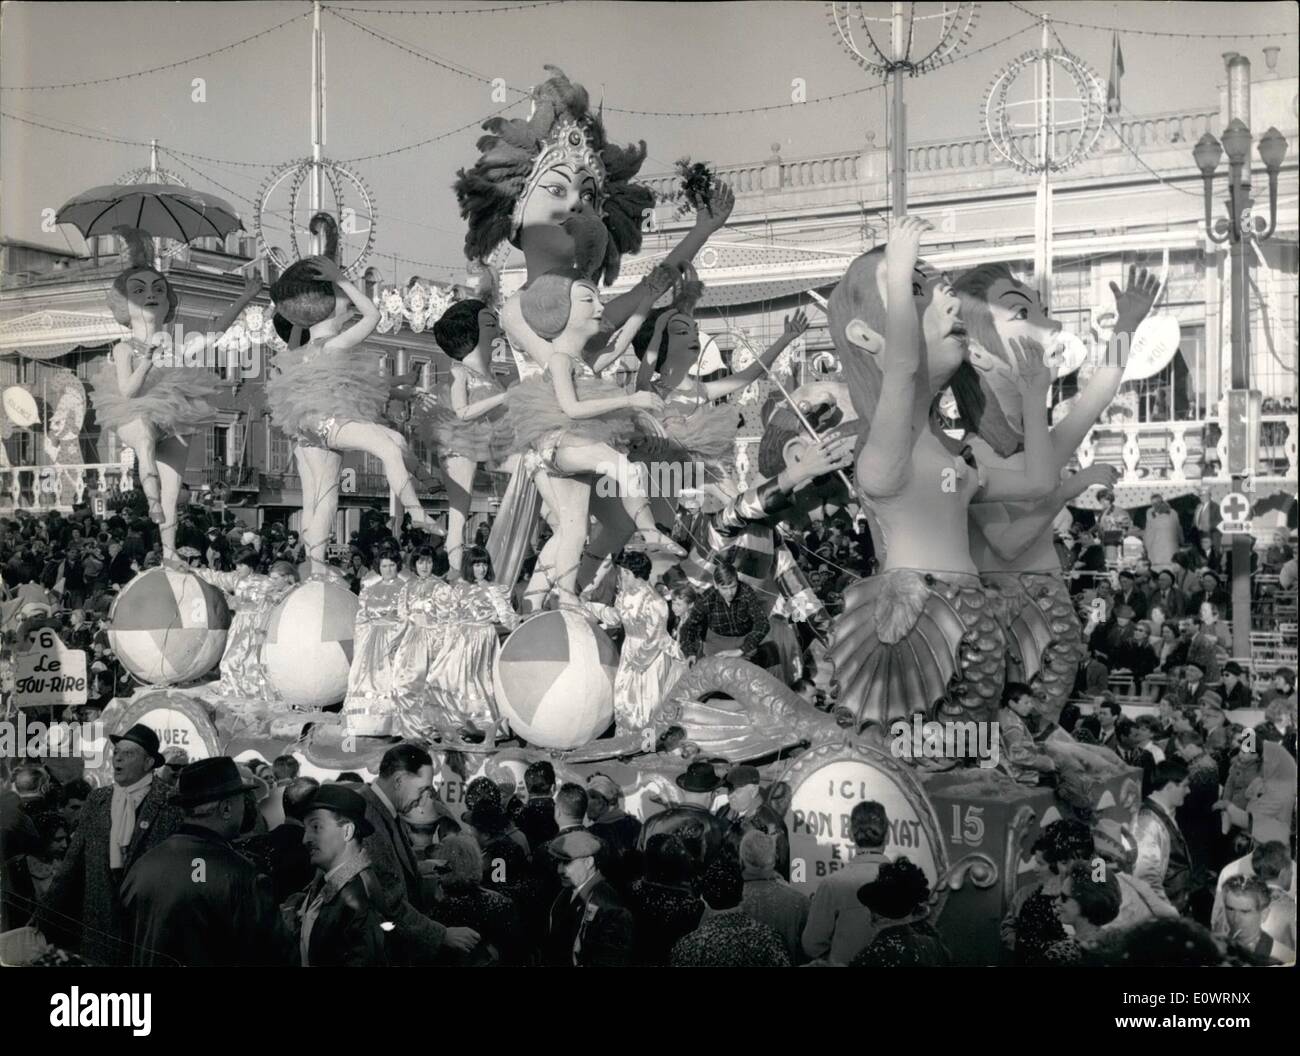 02 février 1964 - Le Carnaval de Nice est sur : 140 000 personnes étaient dans les rues de Nice pour assister à la cérémonie marquant l'entrée Banque D'Images